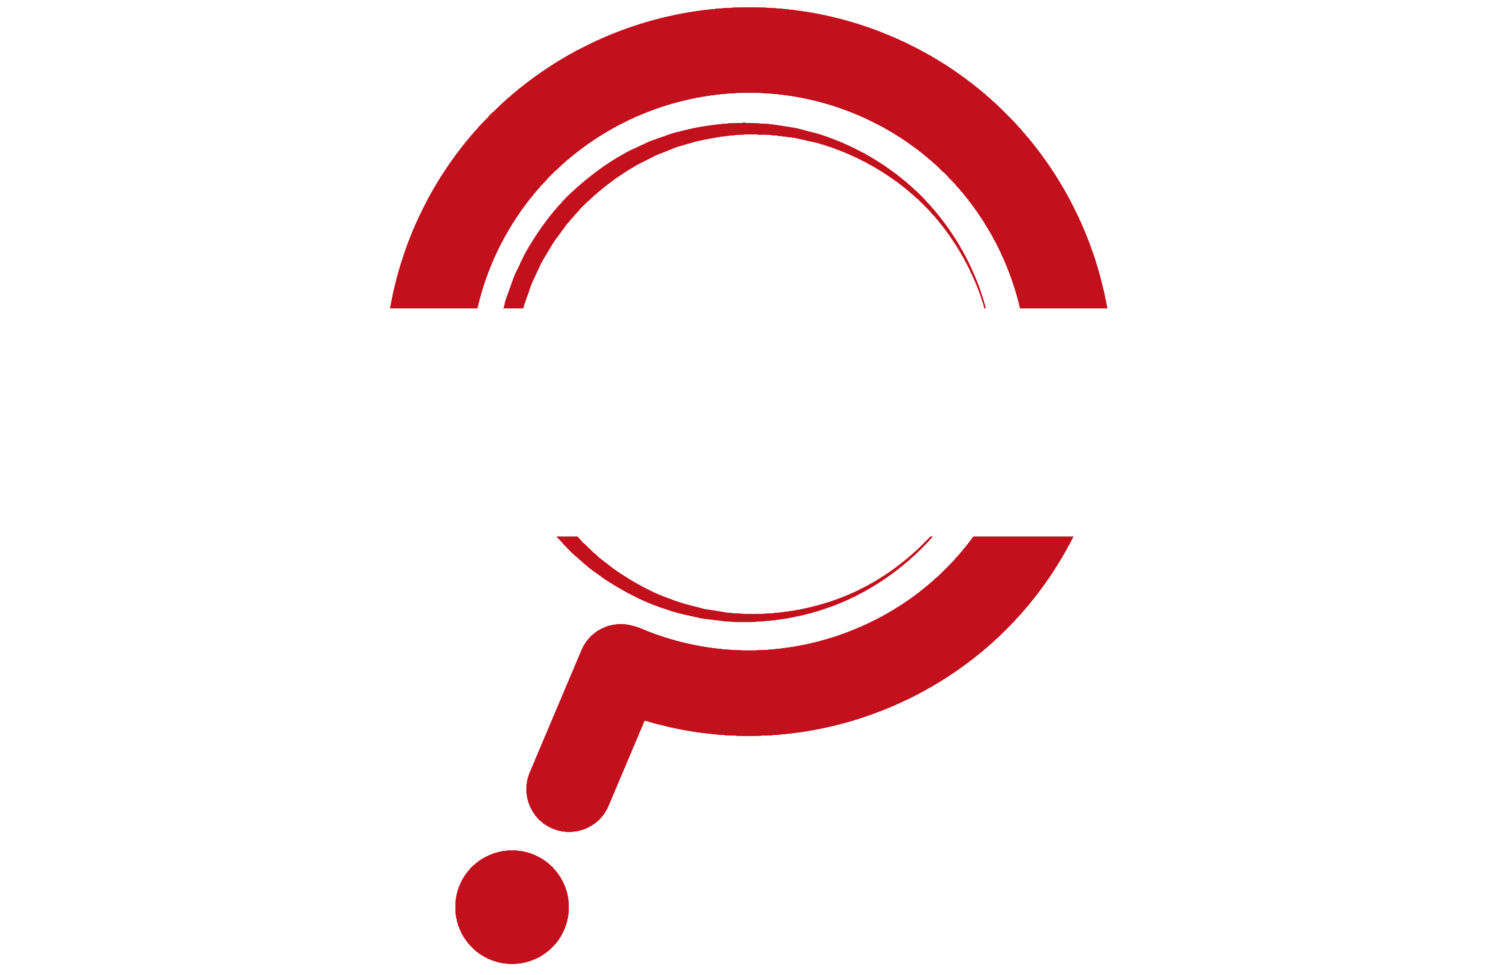 The Mystery Café